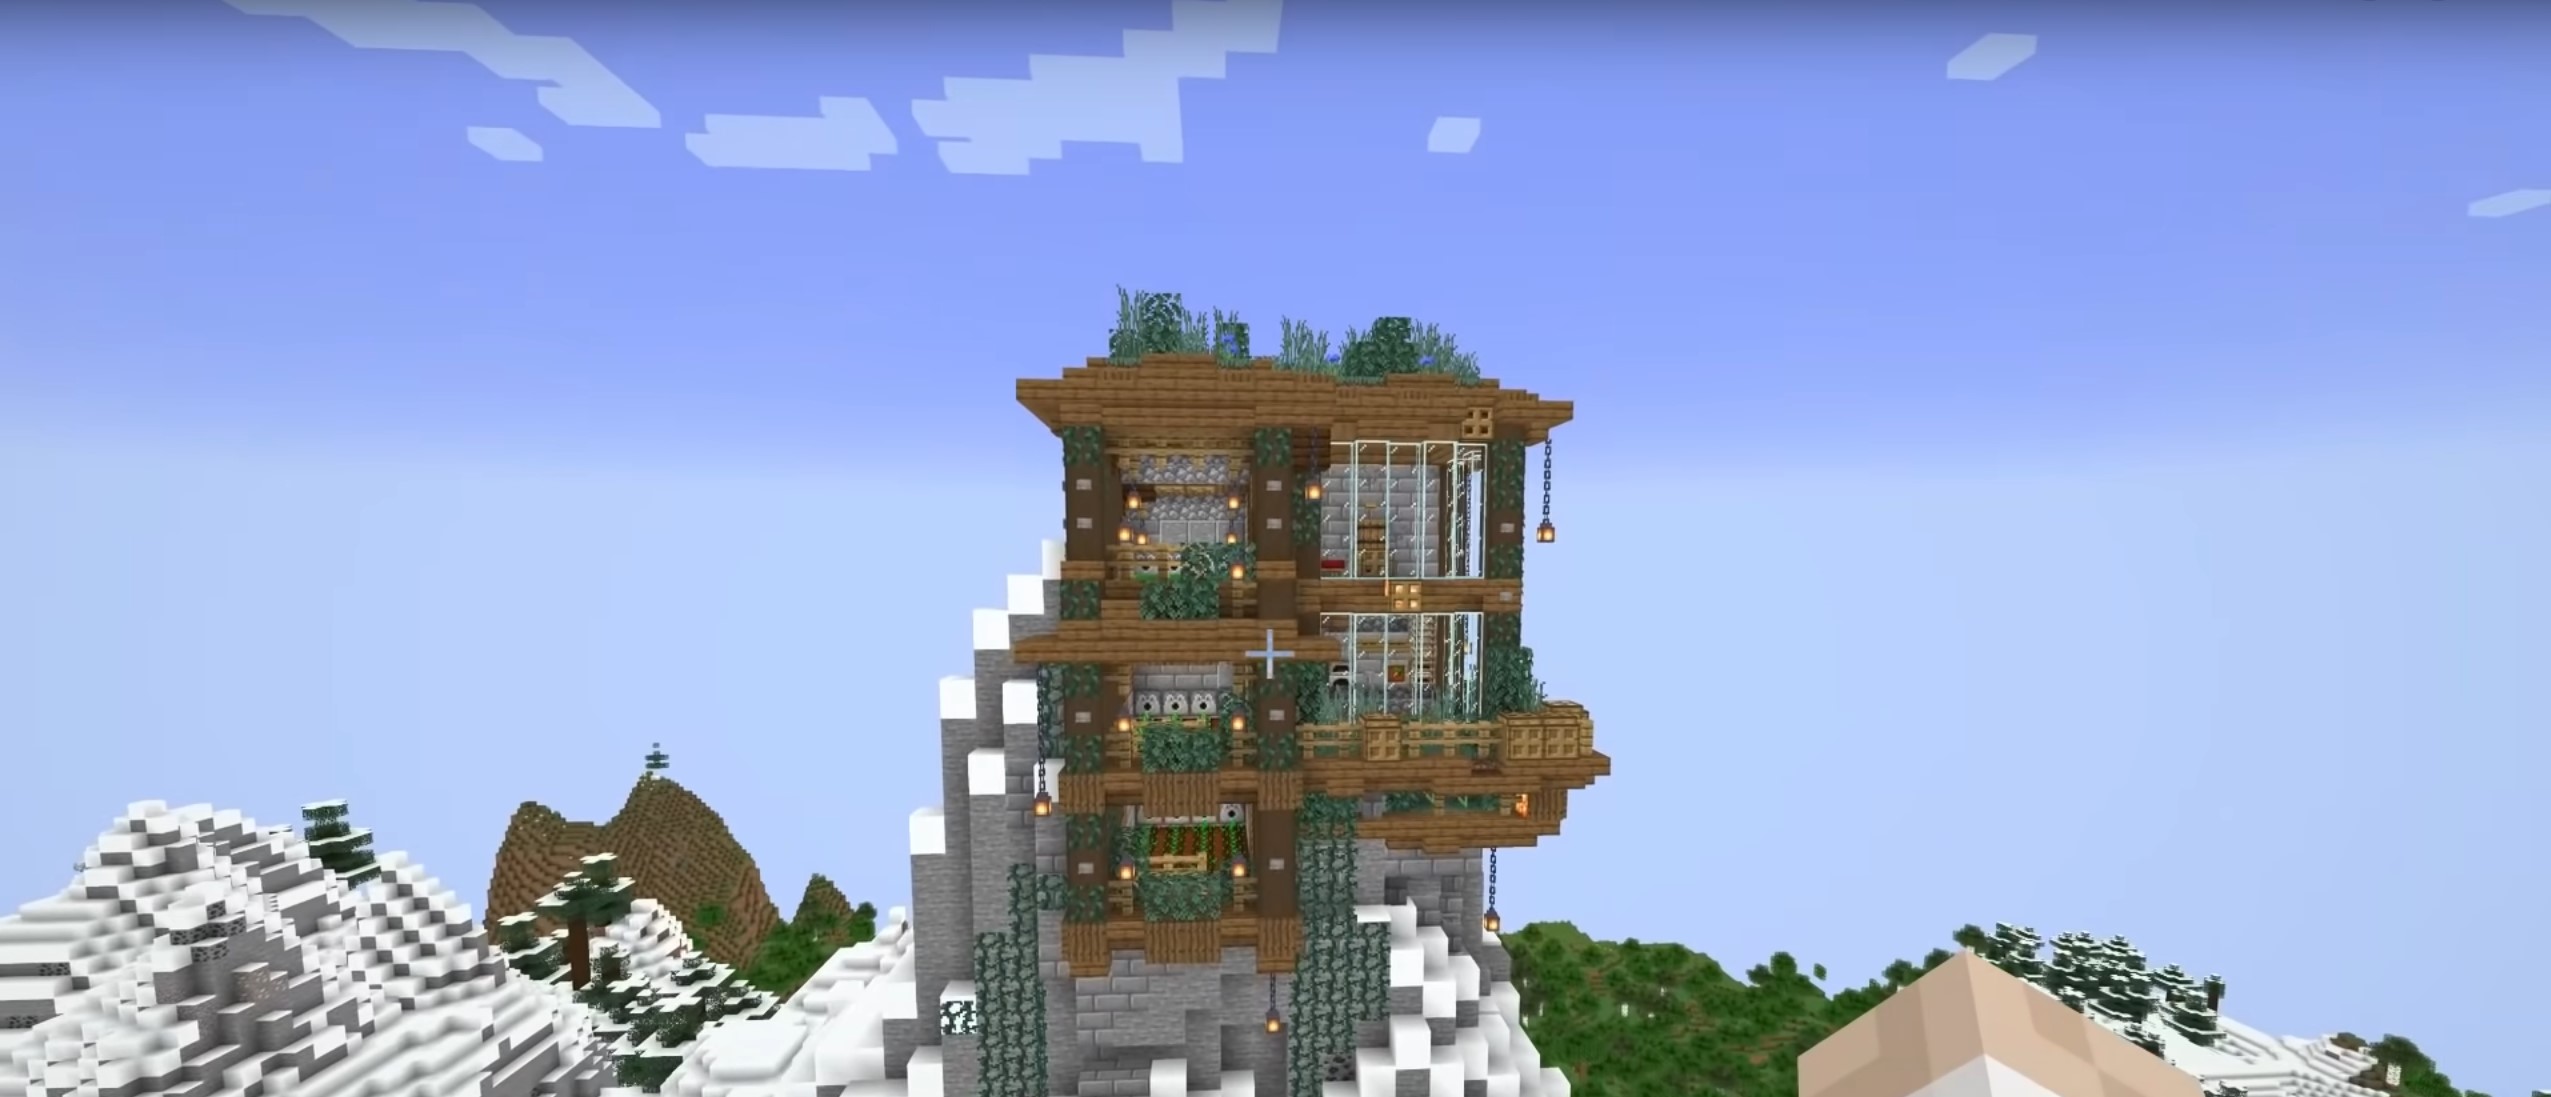 Mountain Piston House minecraft building idea